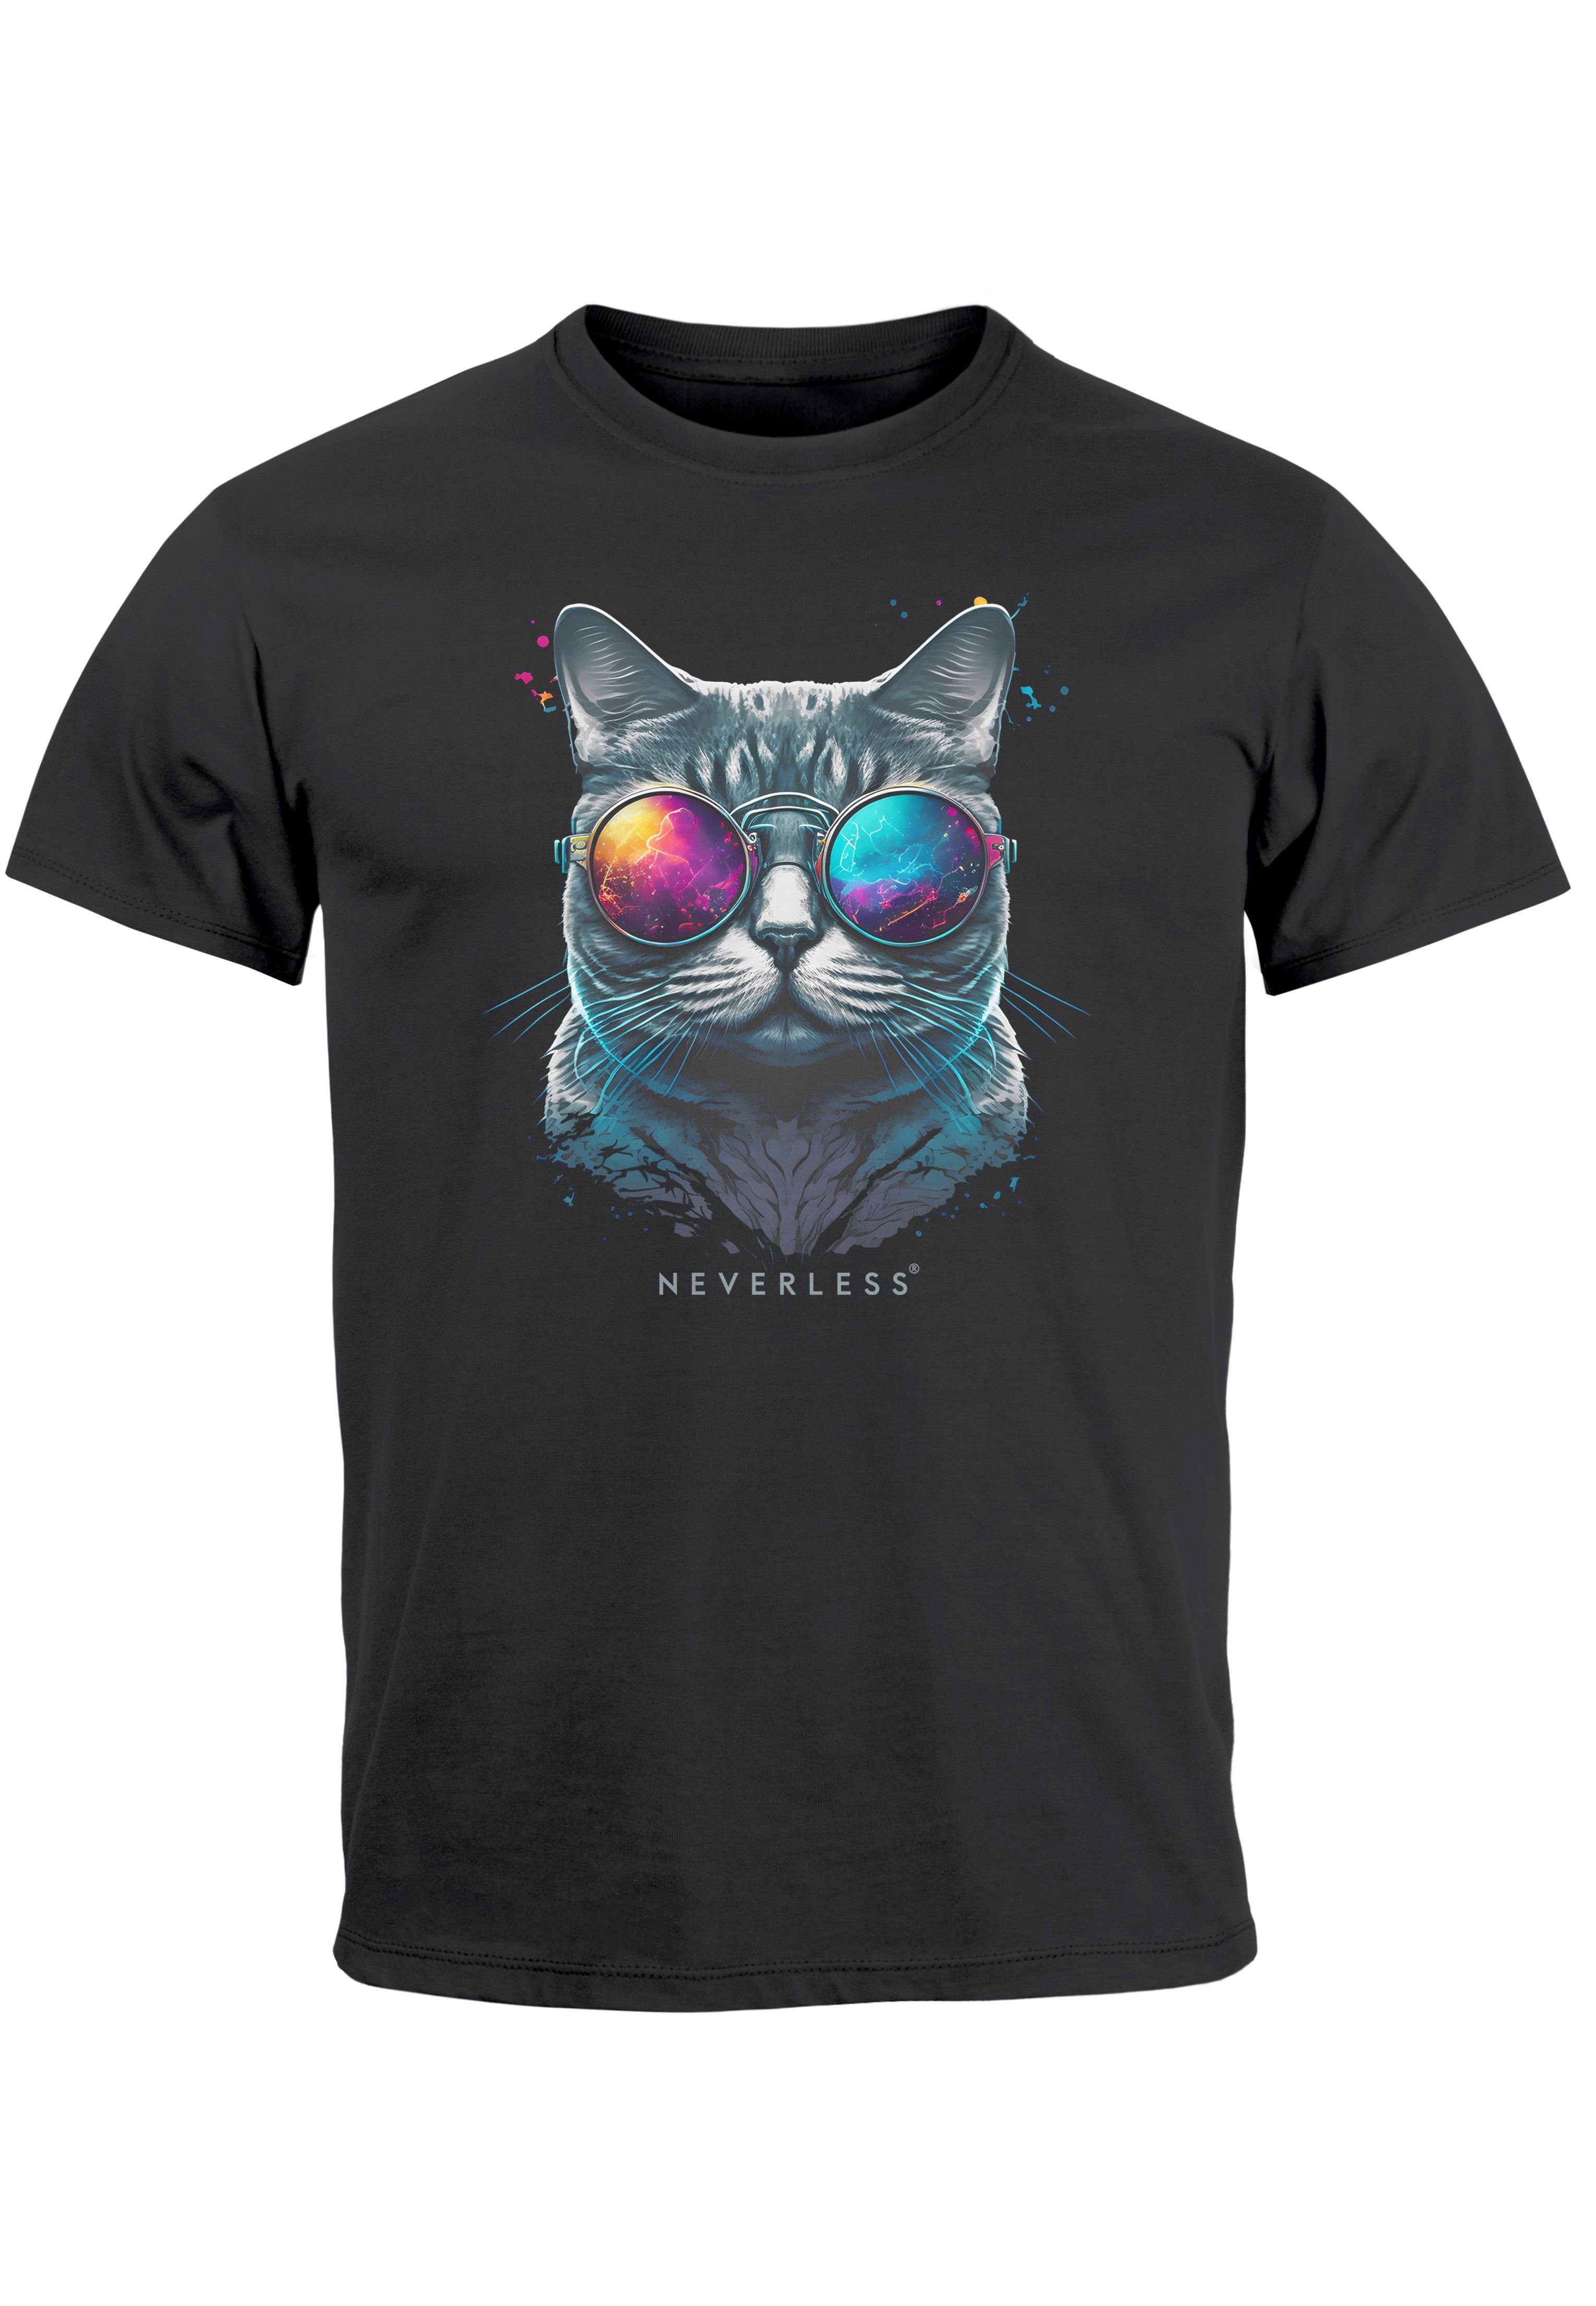 Neverless Print-Shirt Herren T-Shirt Aufdruck Print Cat Style Sonnenbrille mit Katze anthrazit Sommer Pr Fashion